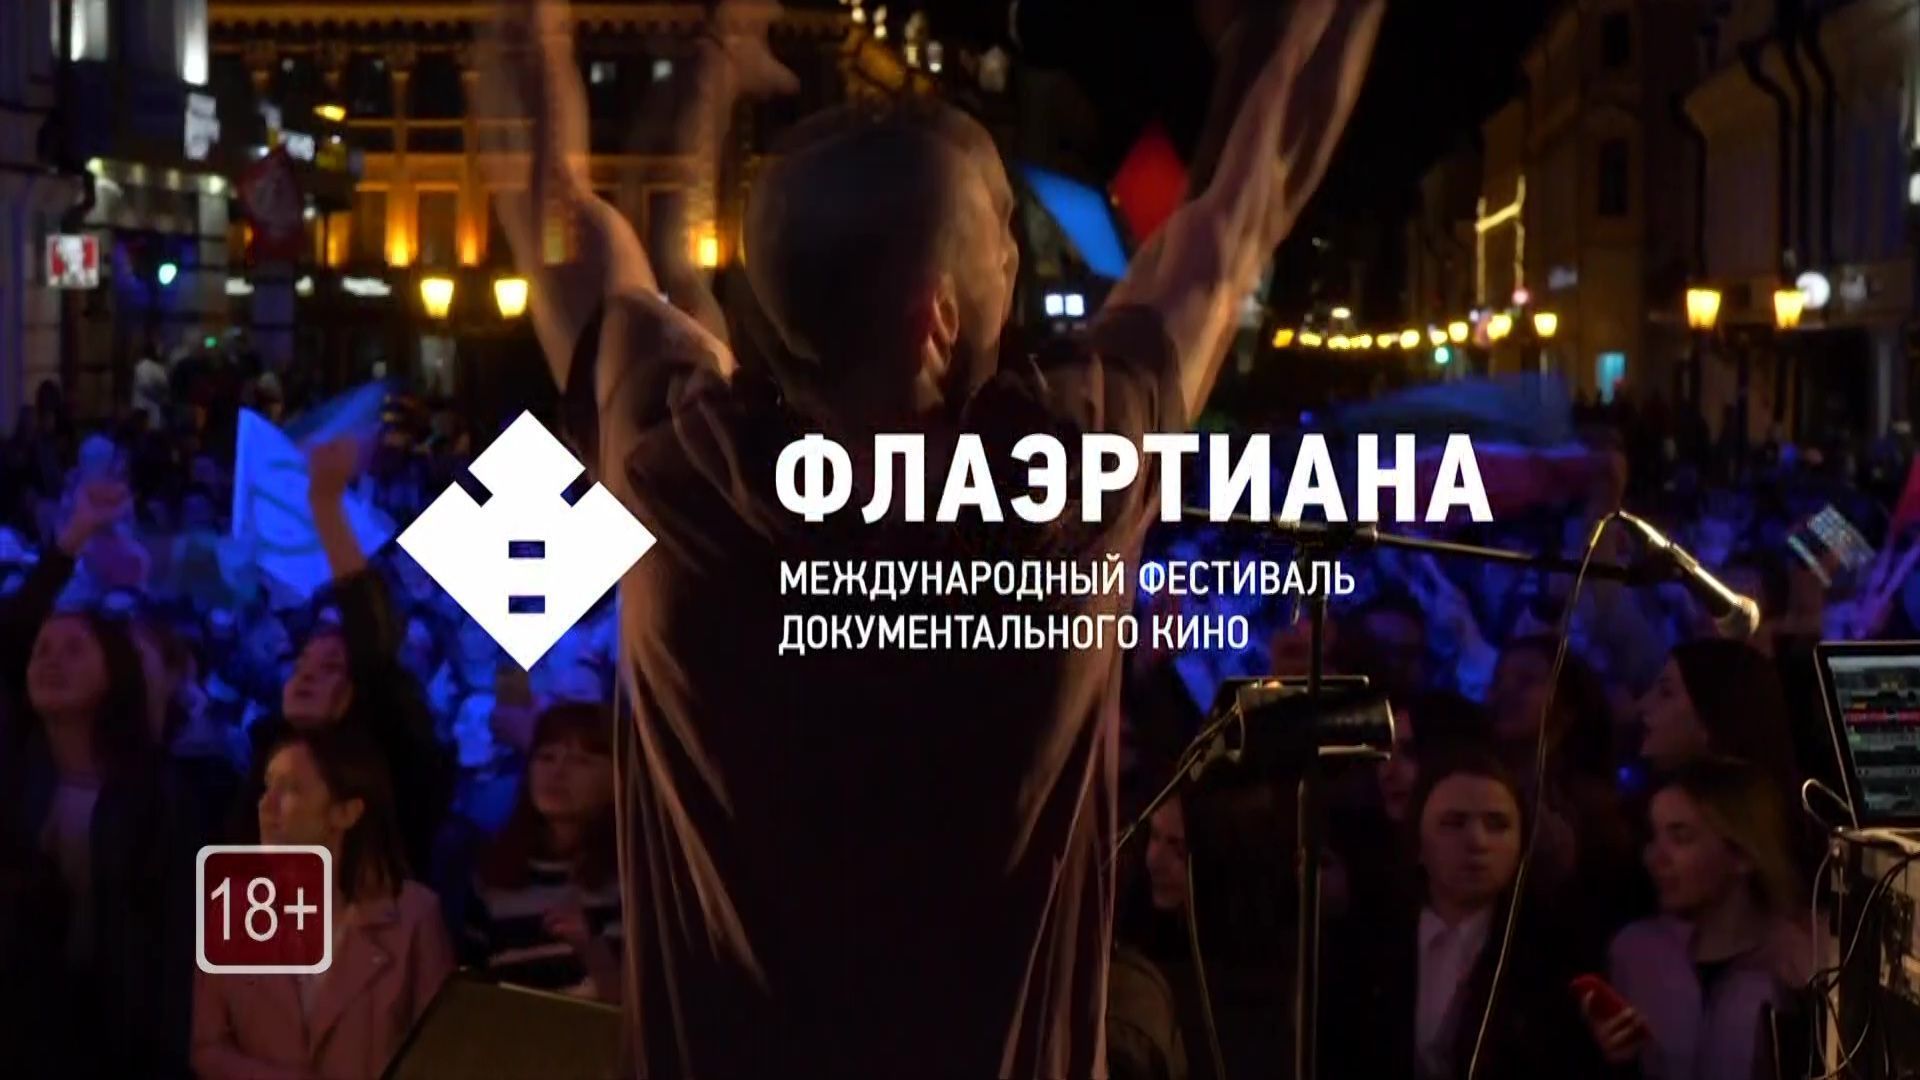 Названы победители пермского фестиваля документального кино «Флаэртиана»